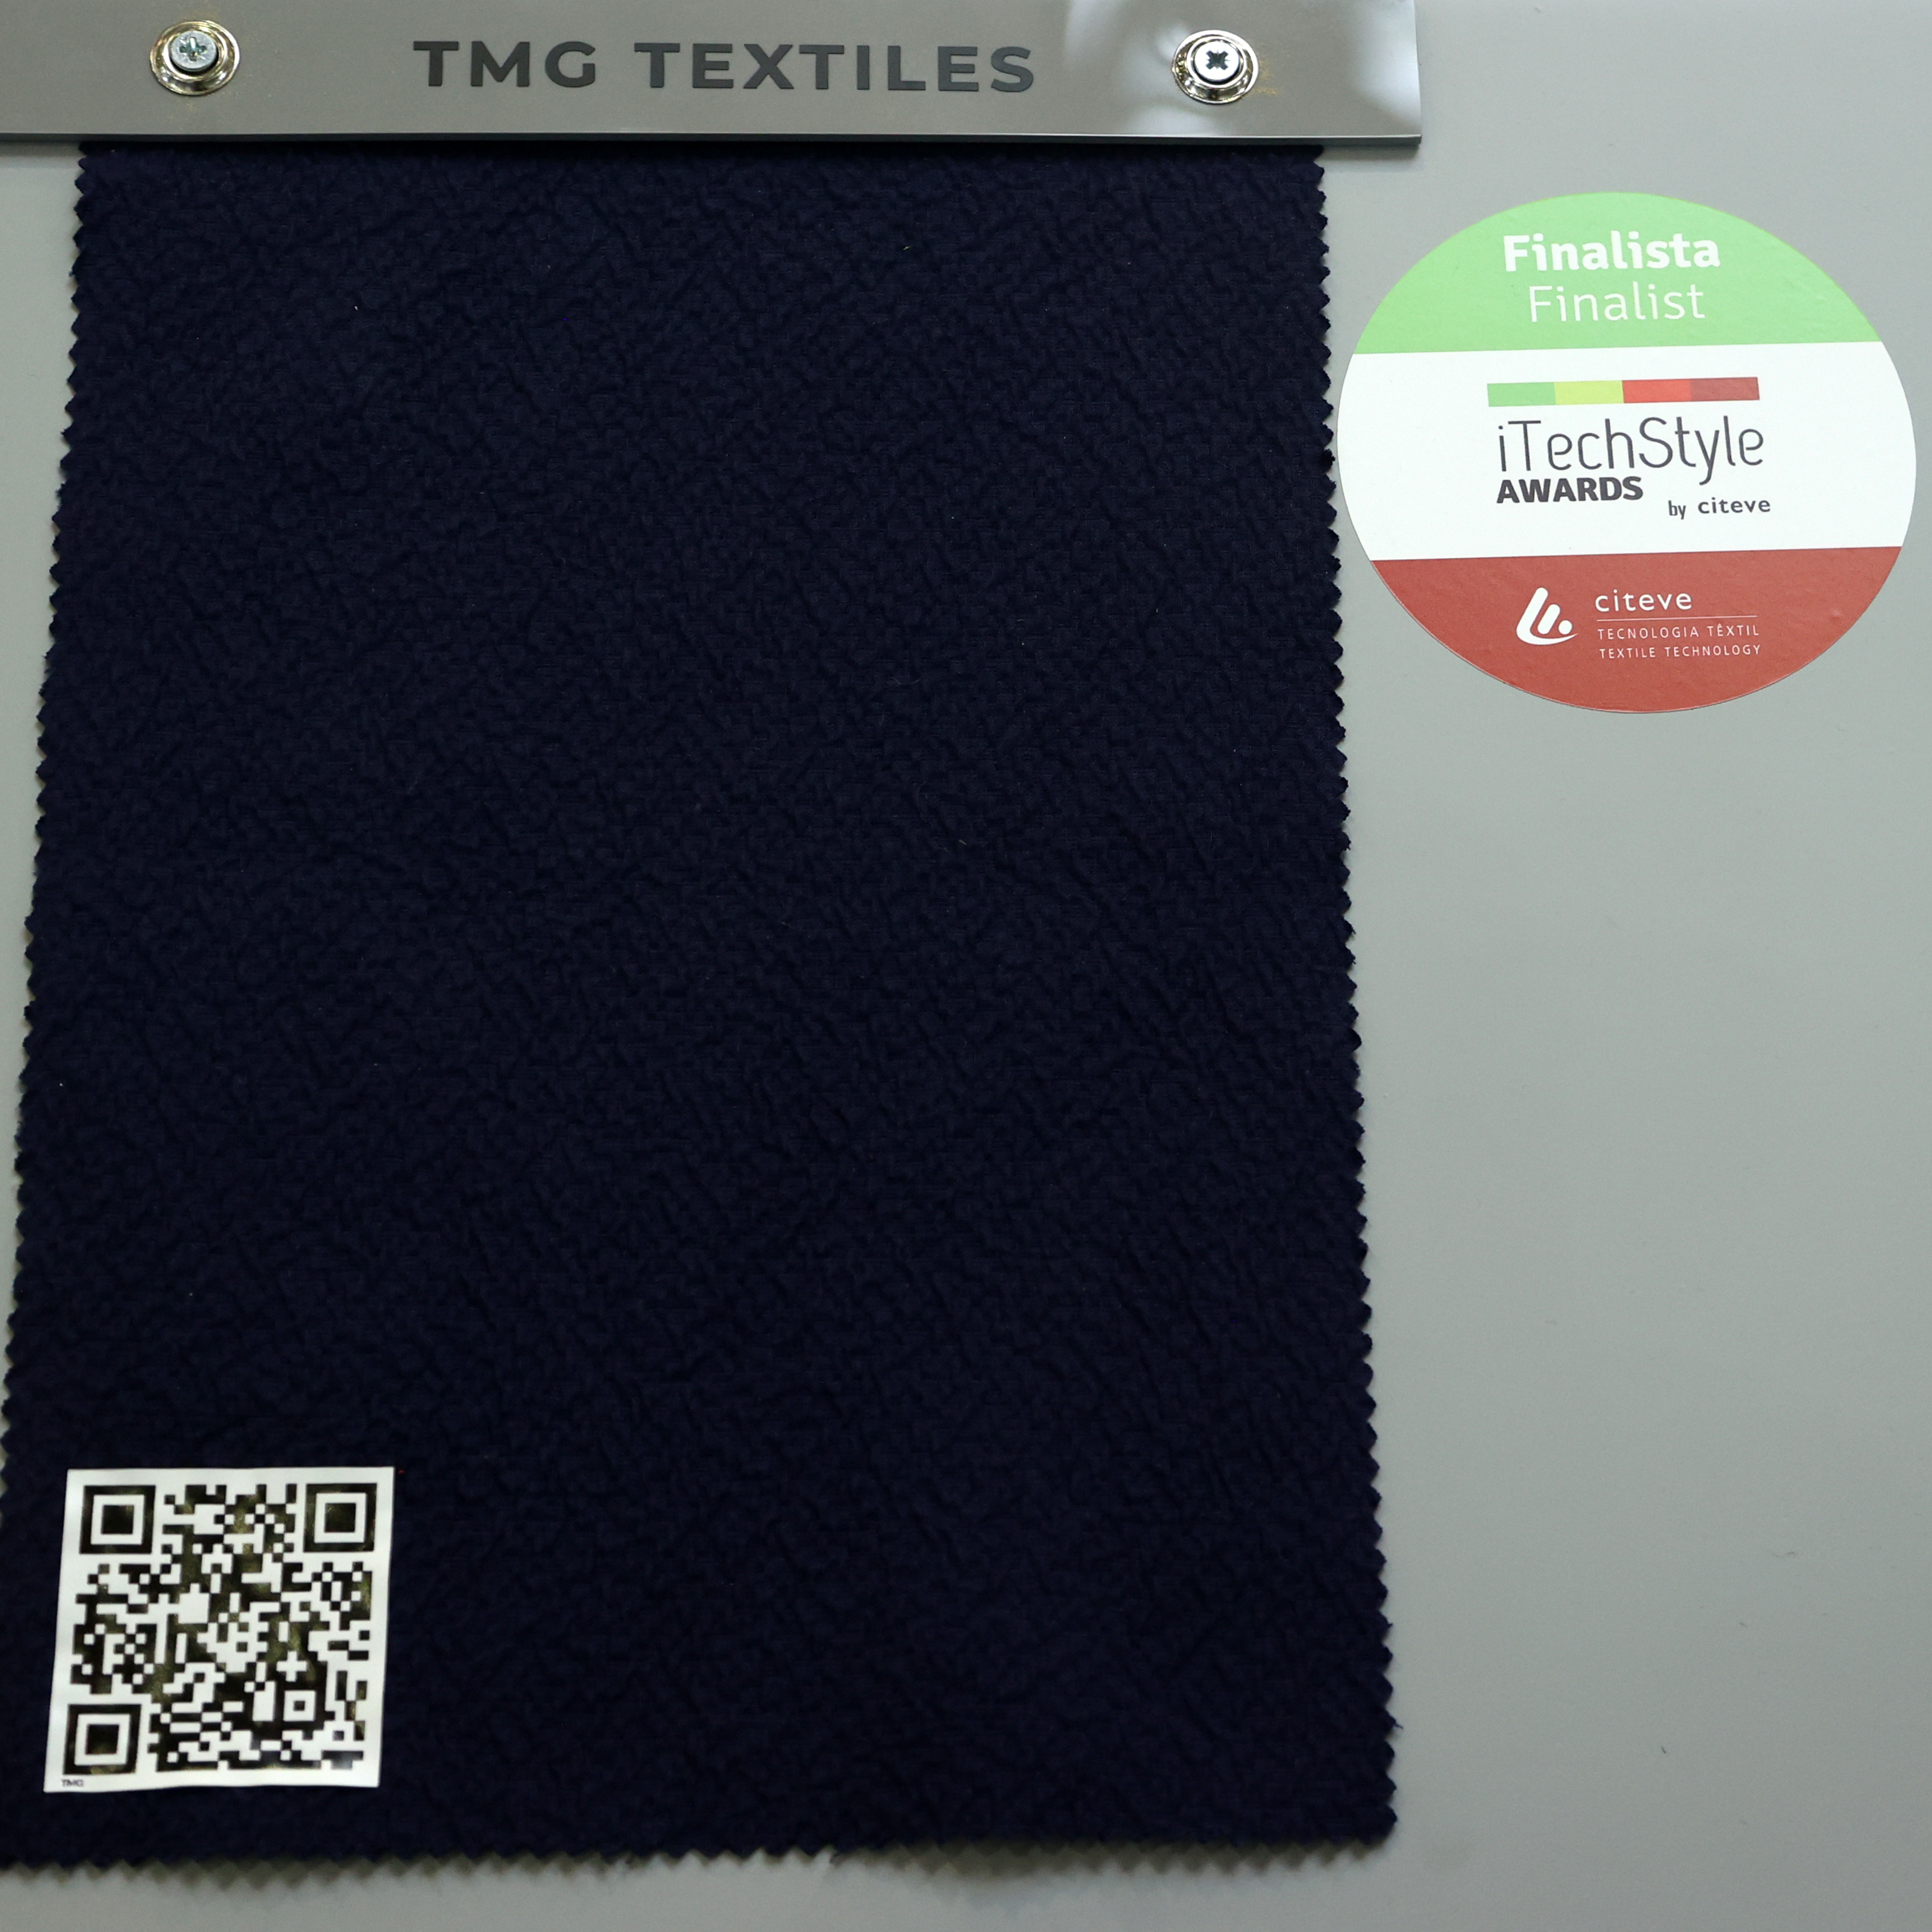 TMG Textiles